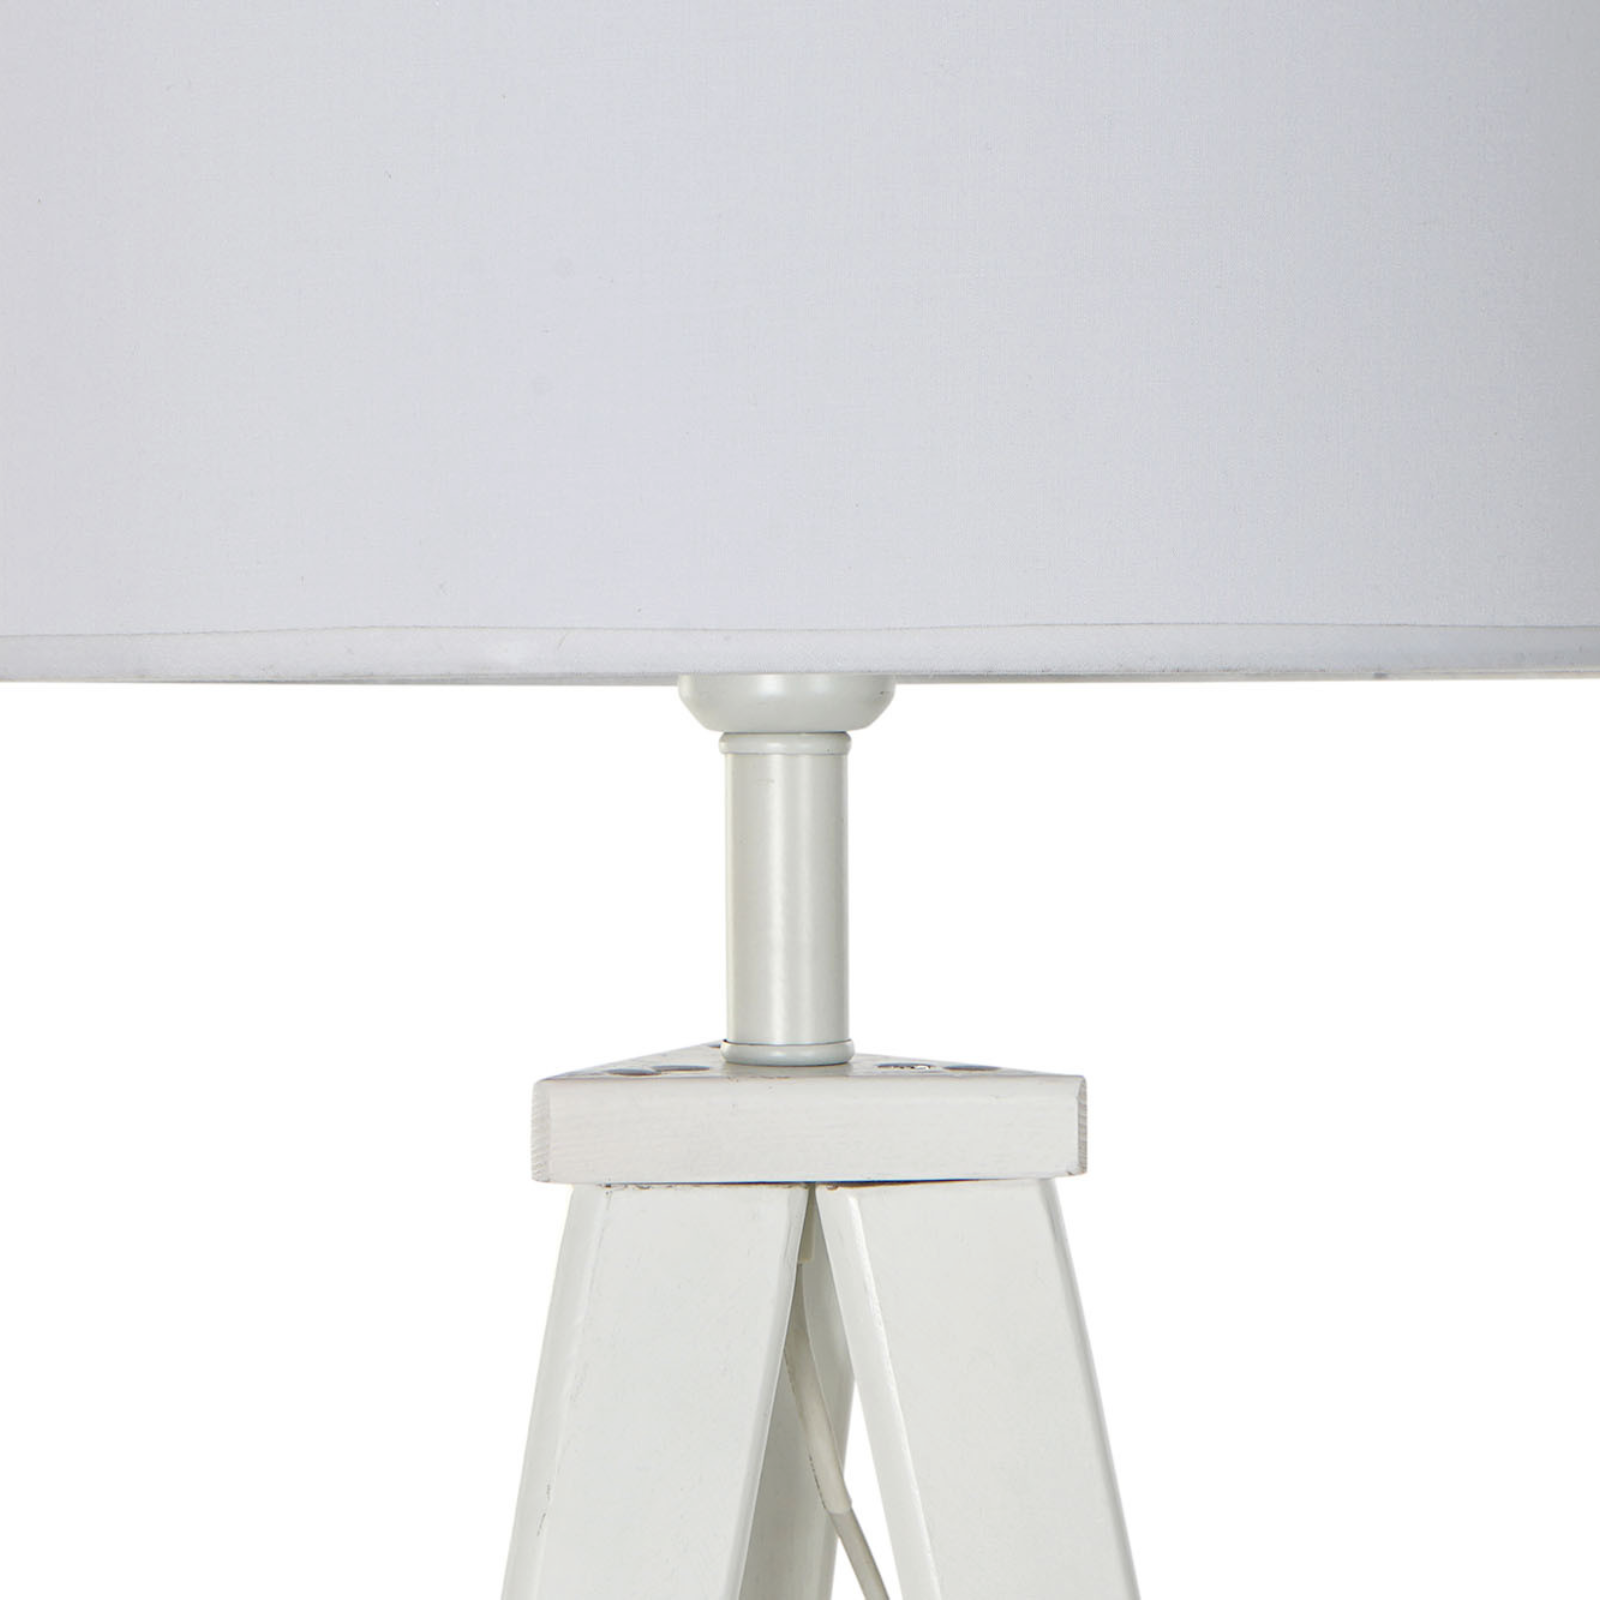 Lampada da terra treppiedi bianca "Mik" design moderno in legno con paralume in plastica